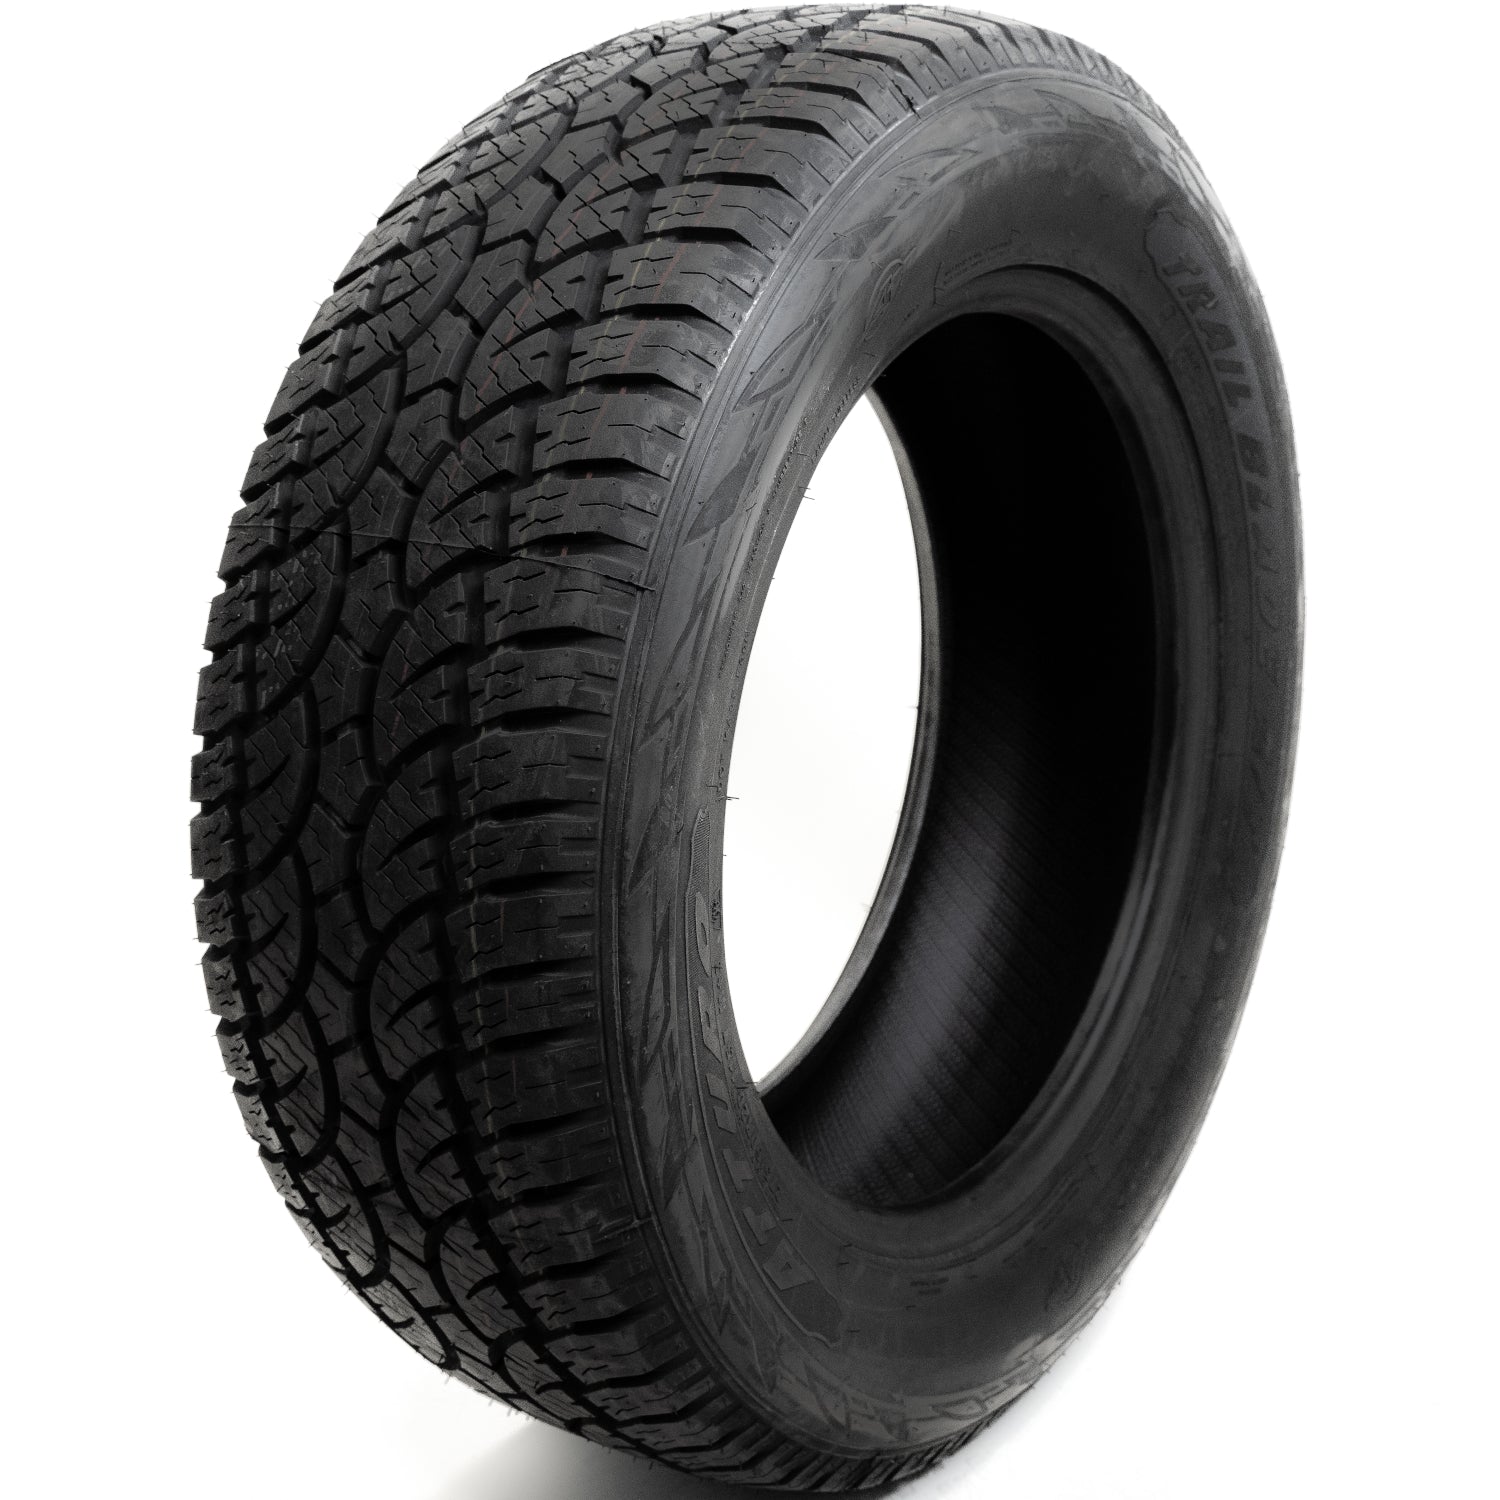 ATTURO TRAIL BLADE AT 275/65R18 (32X11R 18) Tires